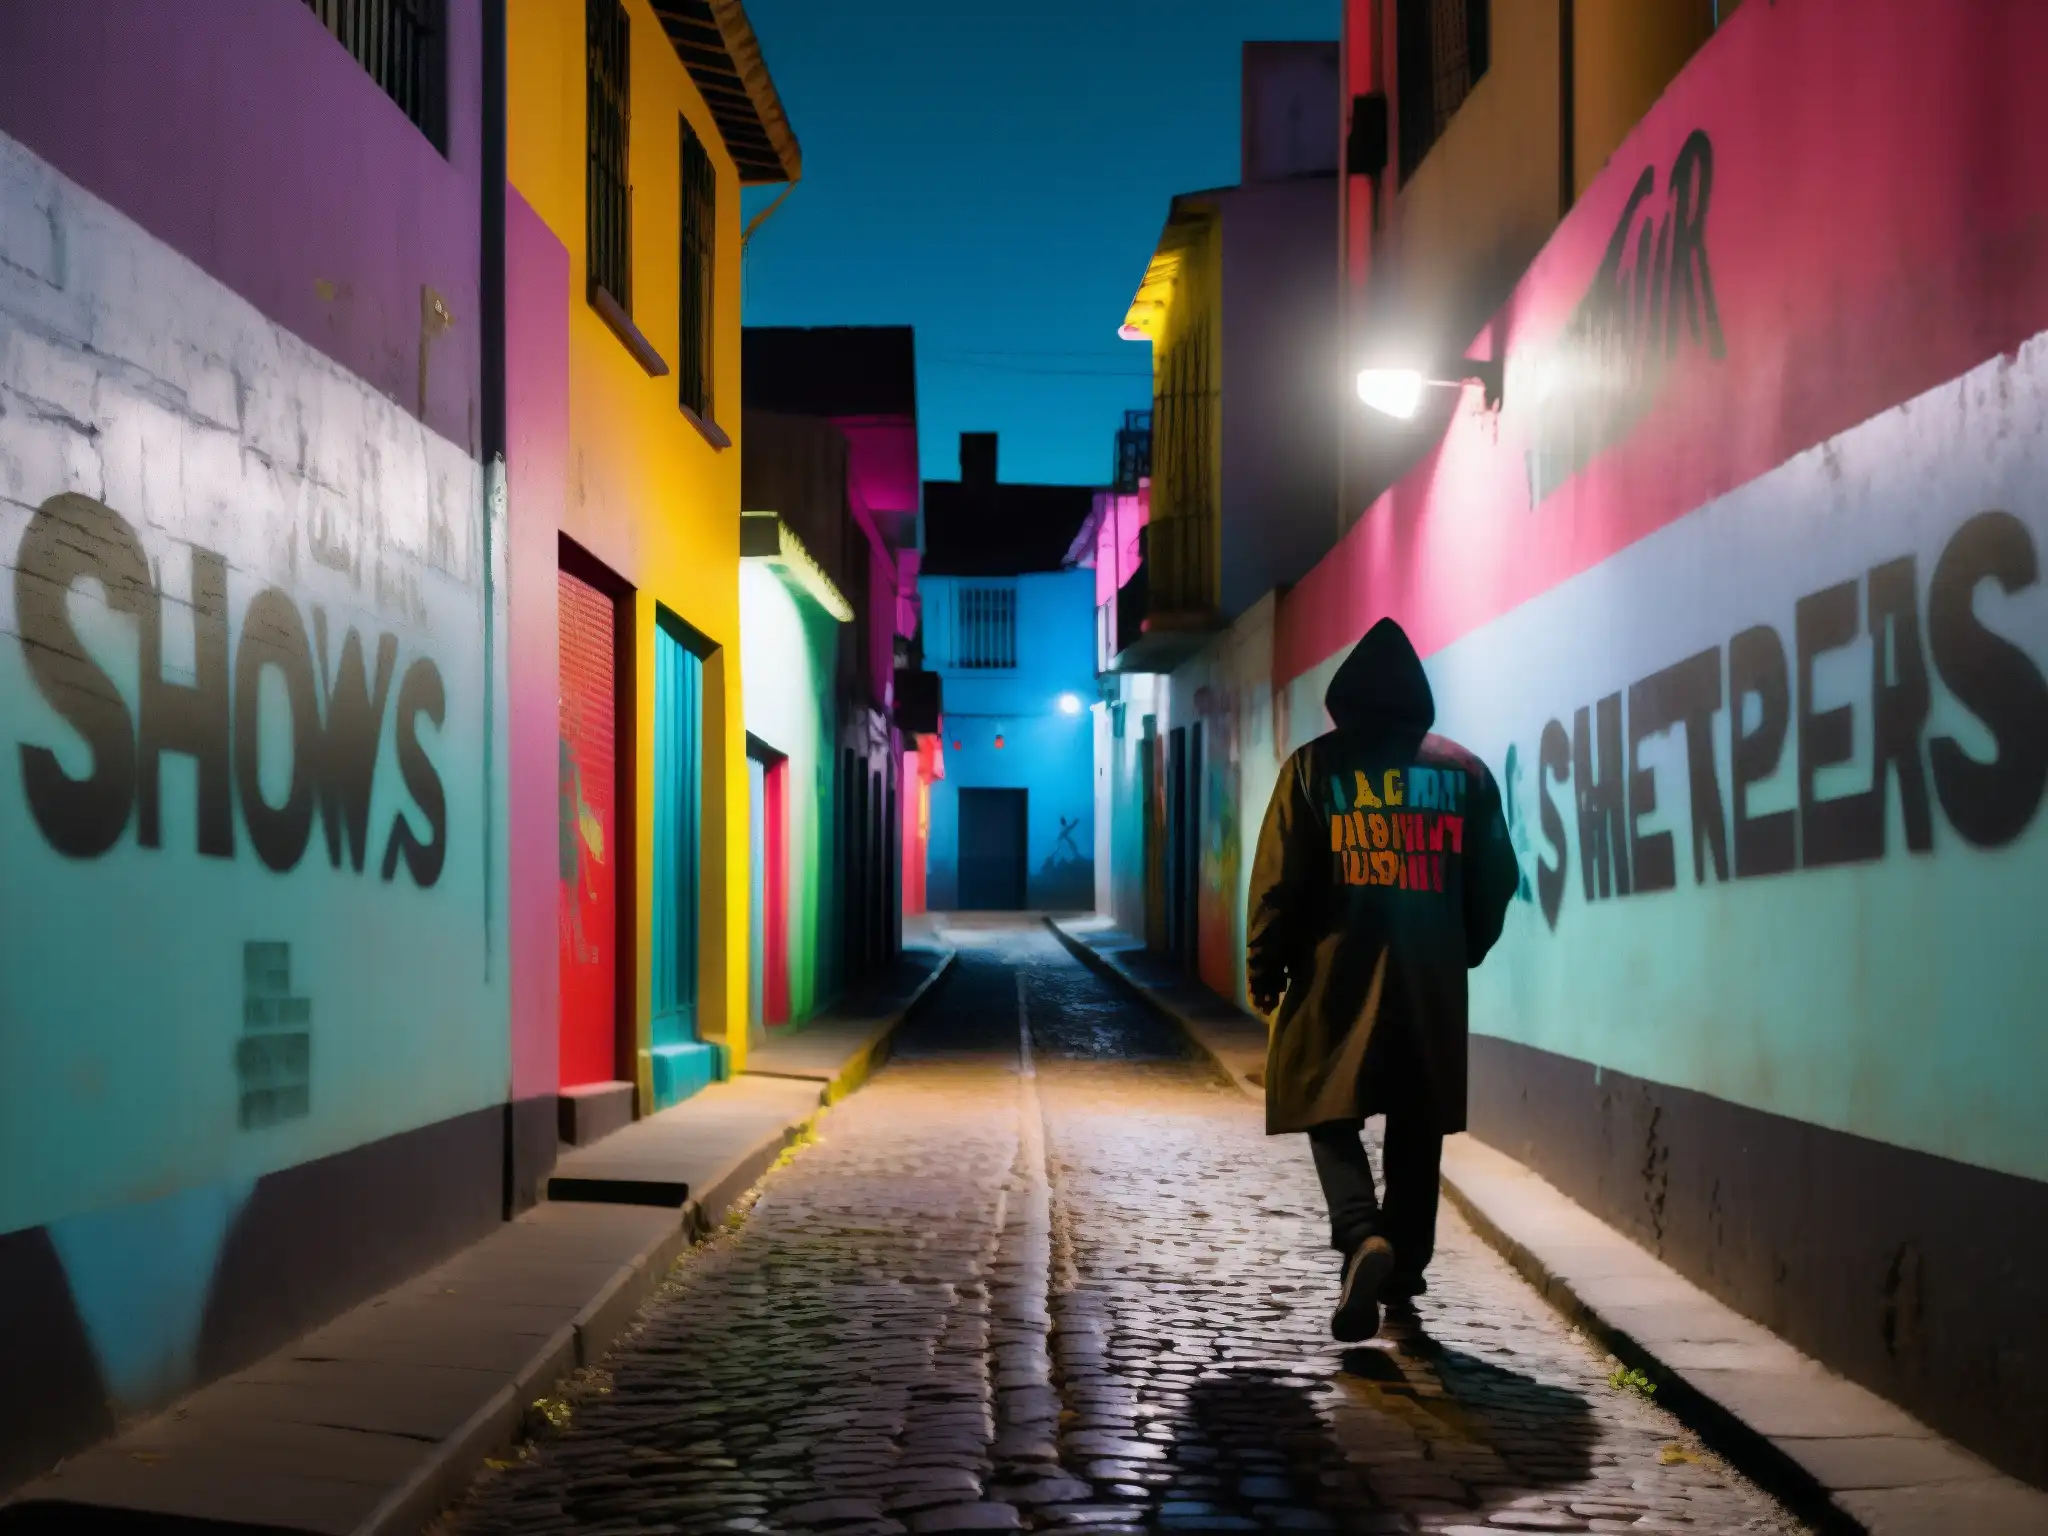 Un callejón tenuemente iluminado en una ciudad latinoamericana, con grafitis coloridos en las paredes y sombras misteriosas